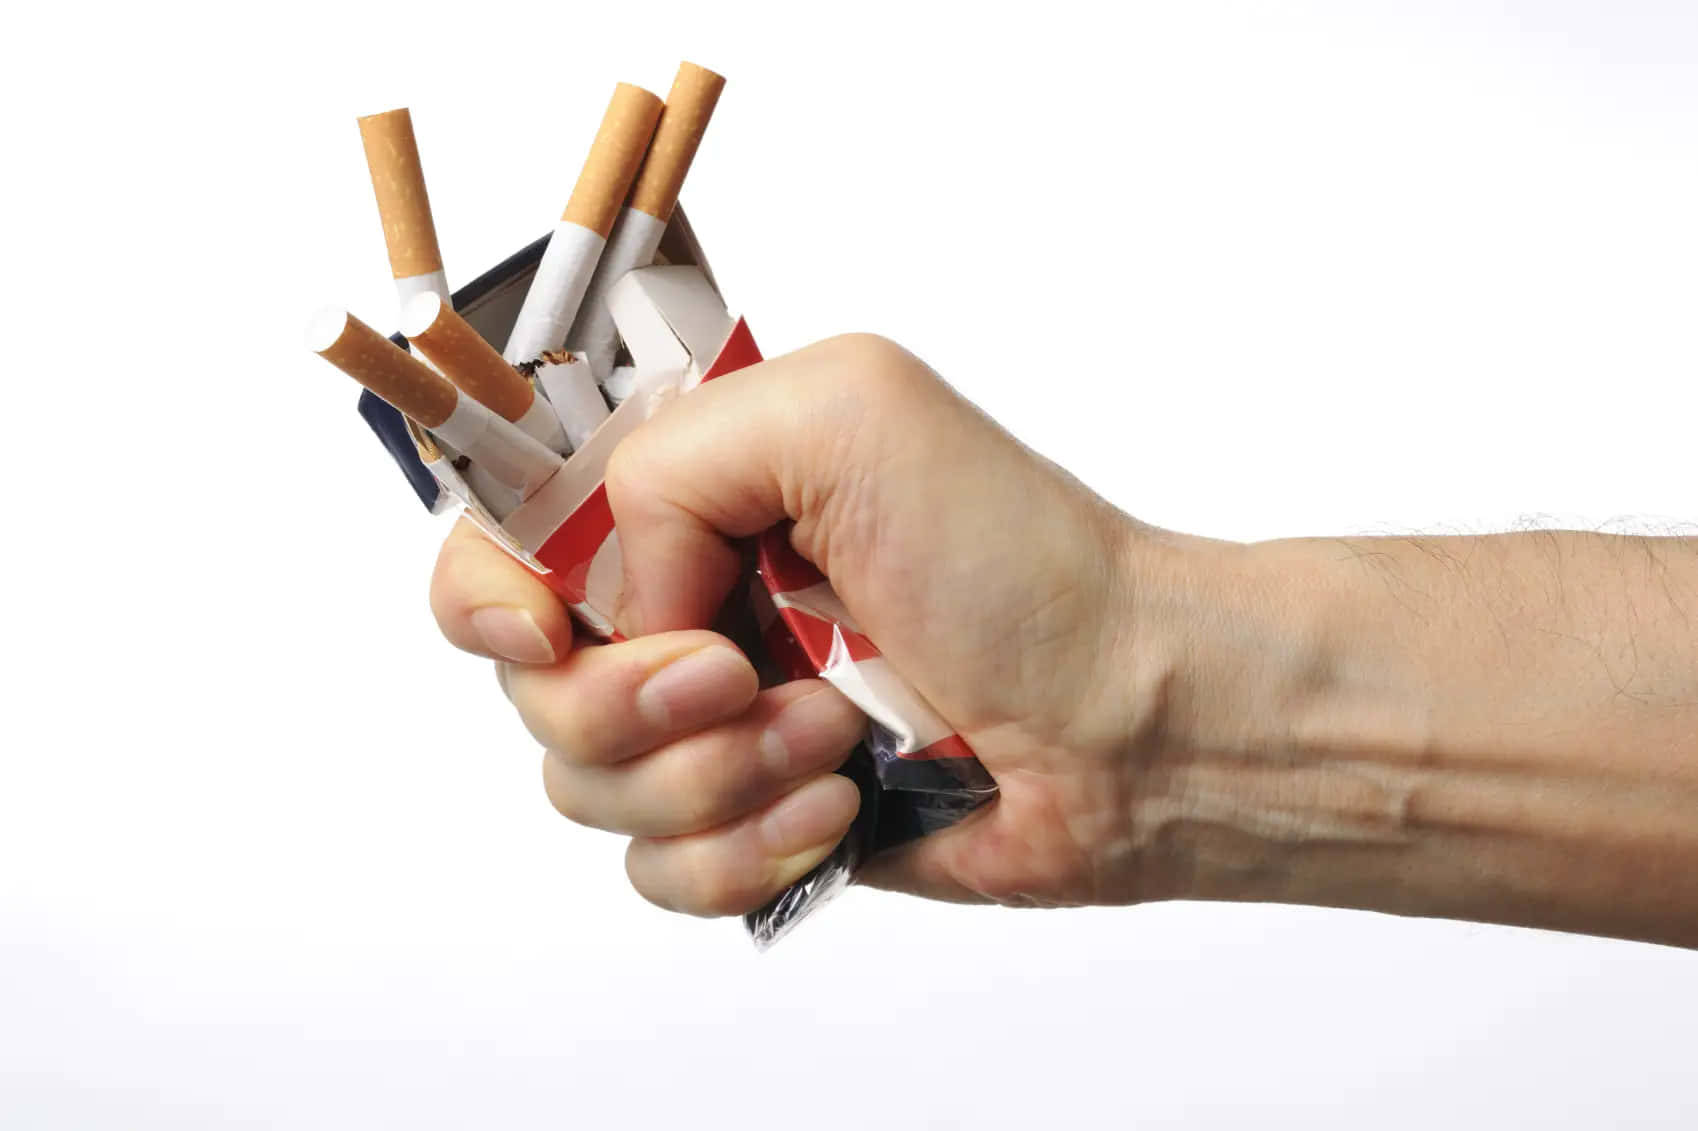 L'eleganzafumosa: Uno Sguardo Più Ravvicinato A Una Sigaretta Accesa.